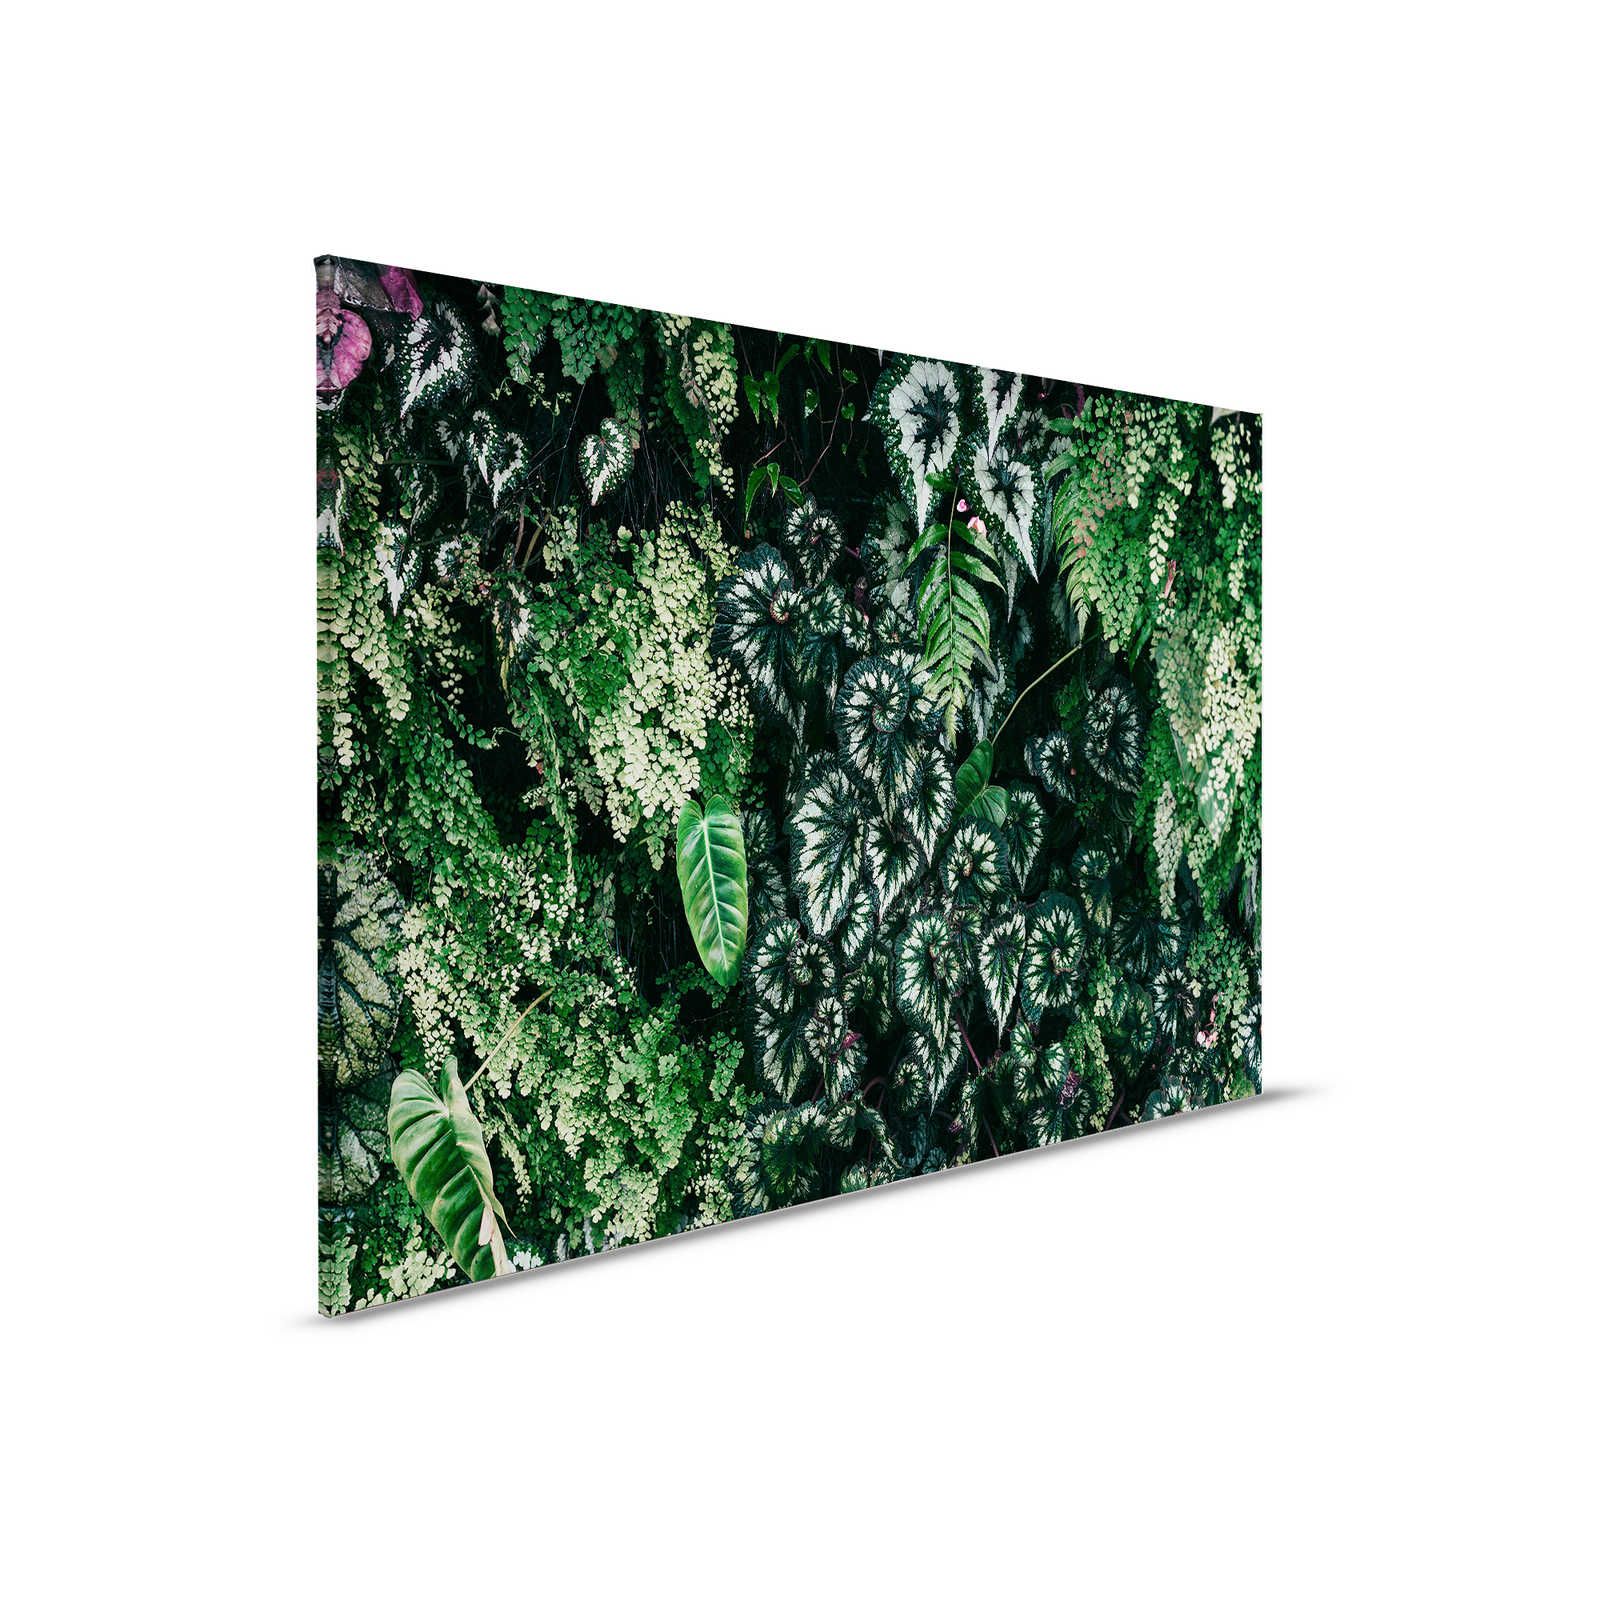         Deep Green 2 - Leinwandbild Blätterdickicht, Farne & Hängepflanzen – 0,90 m x 0,60 m
    